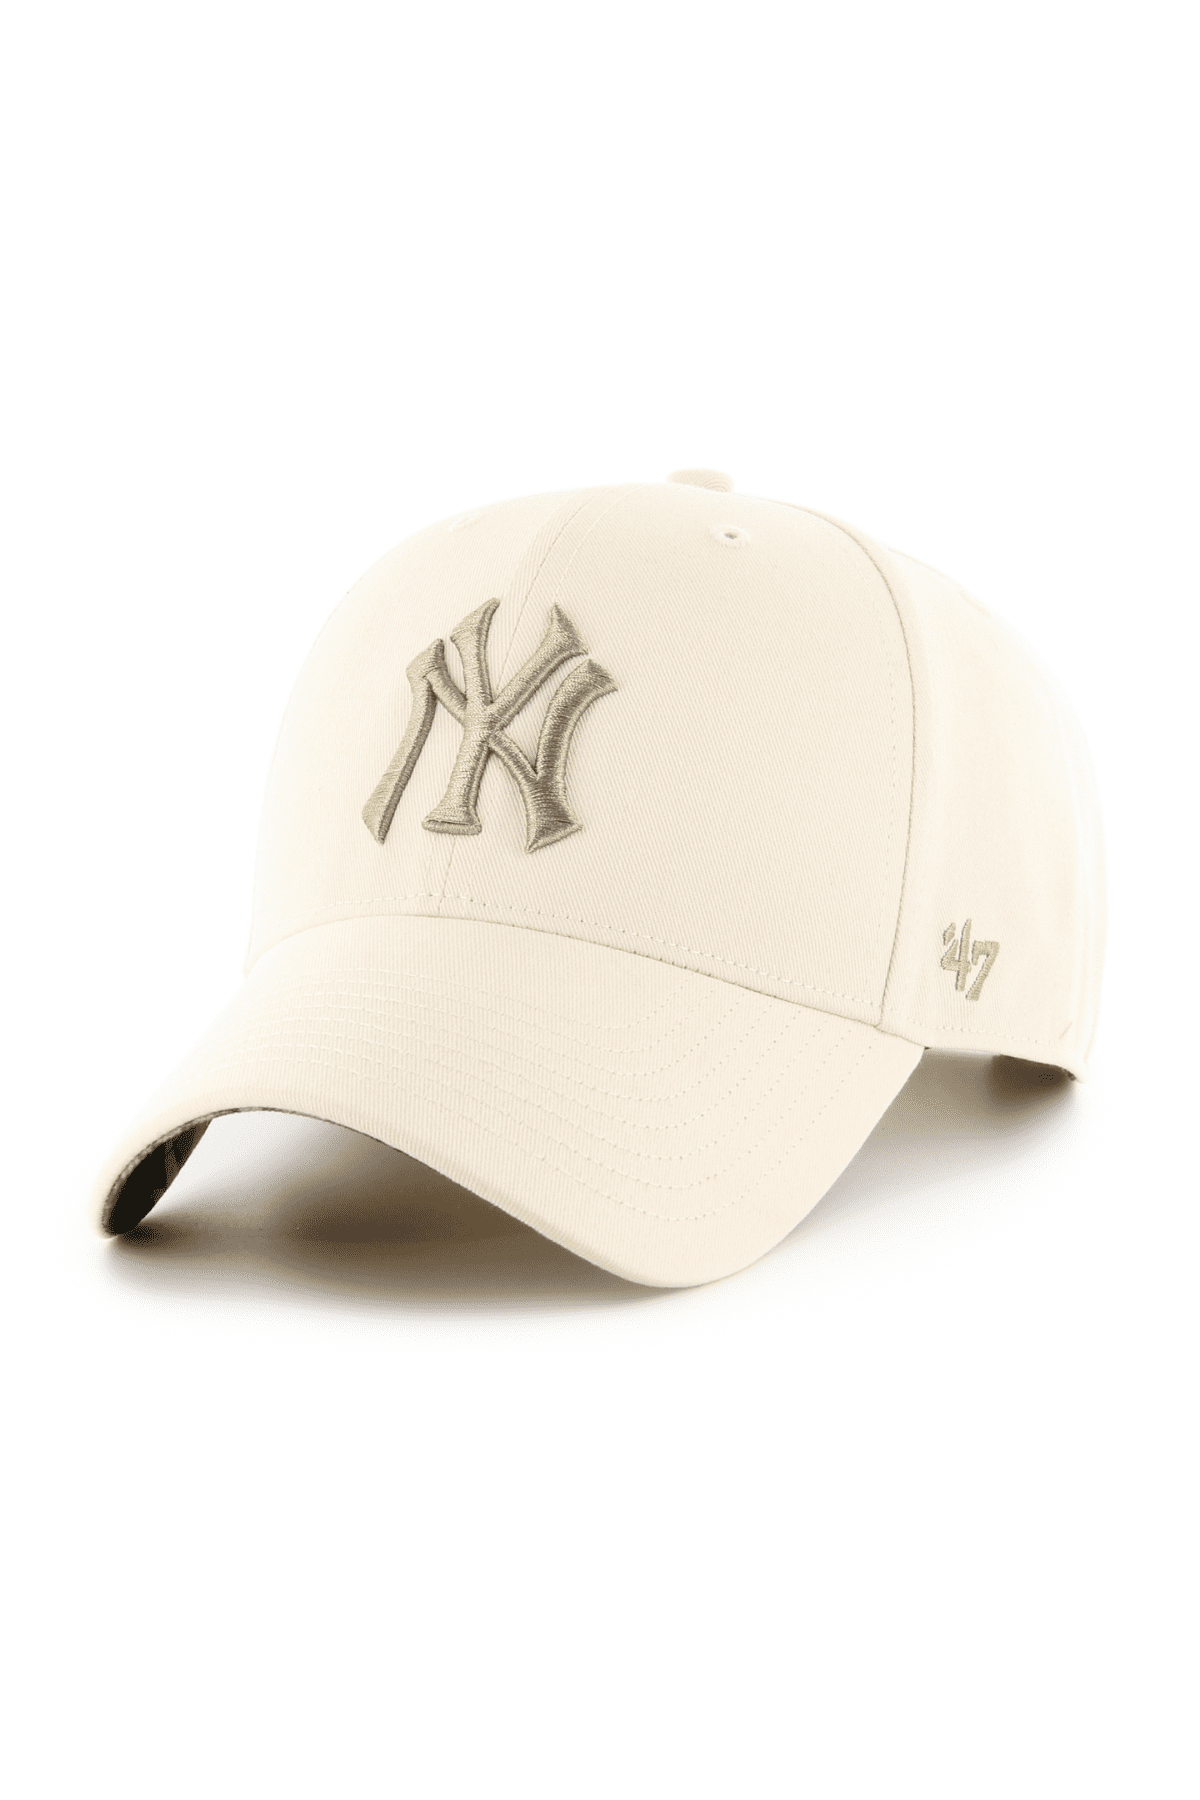 כובע מצחייה - 47 MVP NY עם הדפס New York Yankees שמנת-47-One size-נאקו